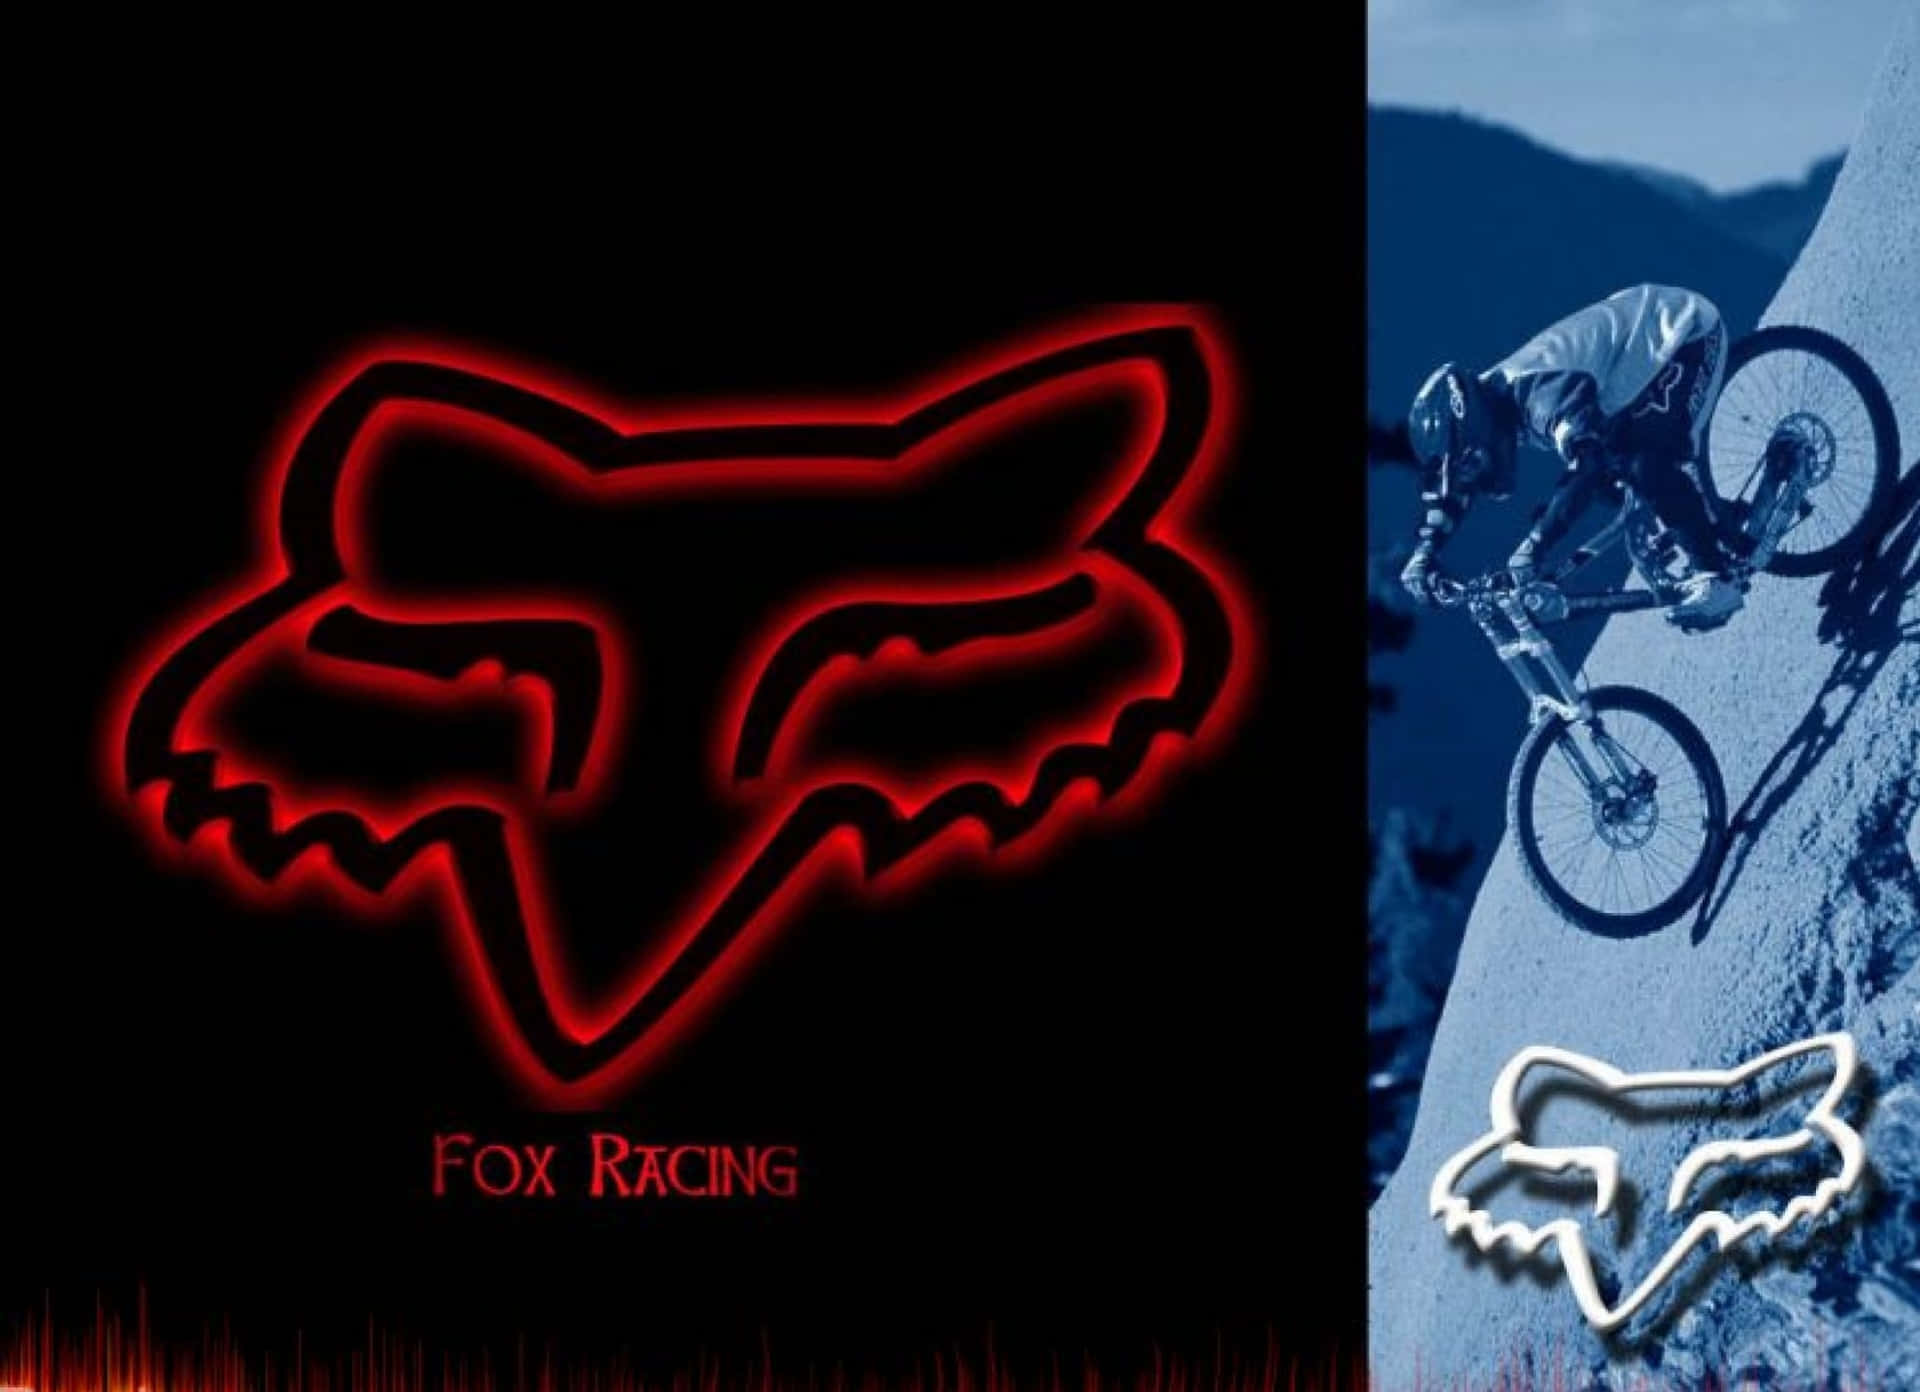 Erlebedas Adrenalin Mit Fox Racing Wallpaper